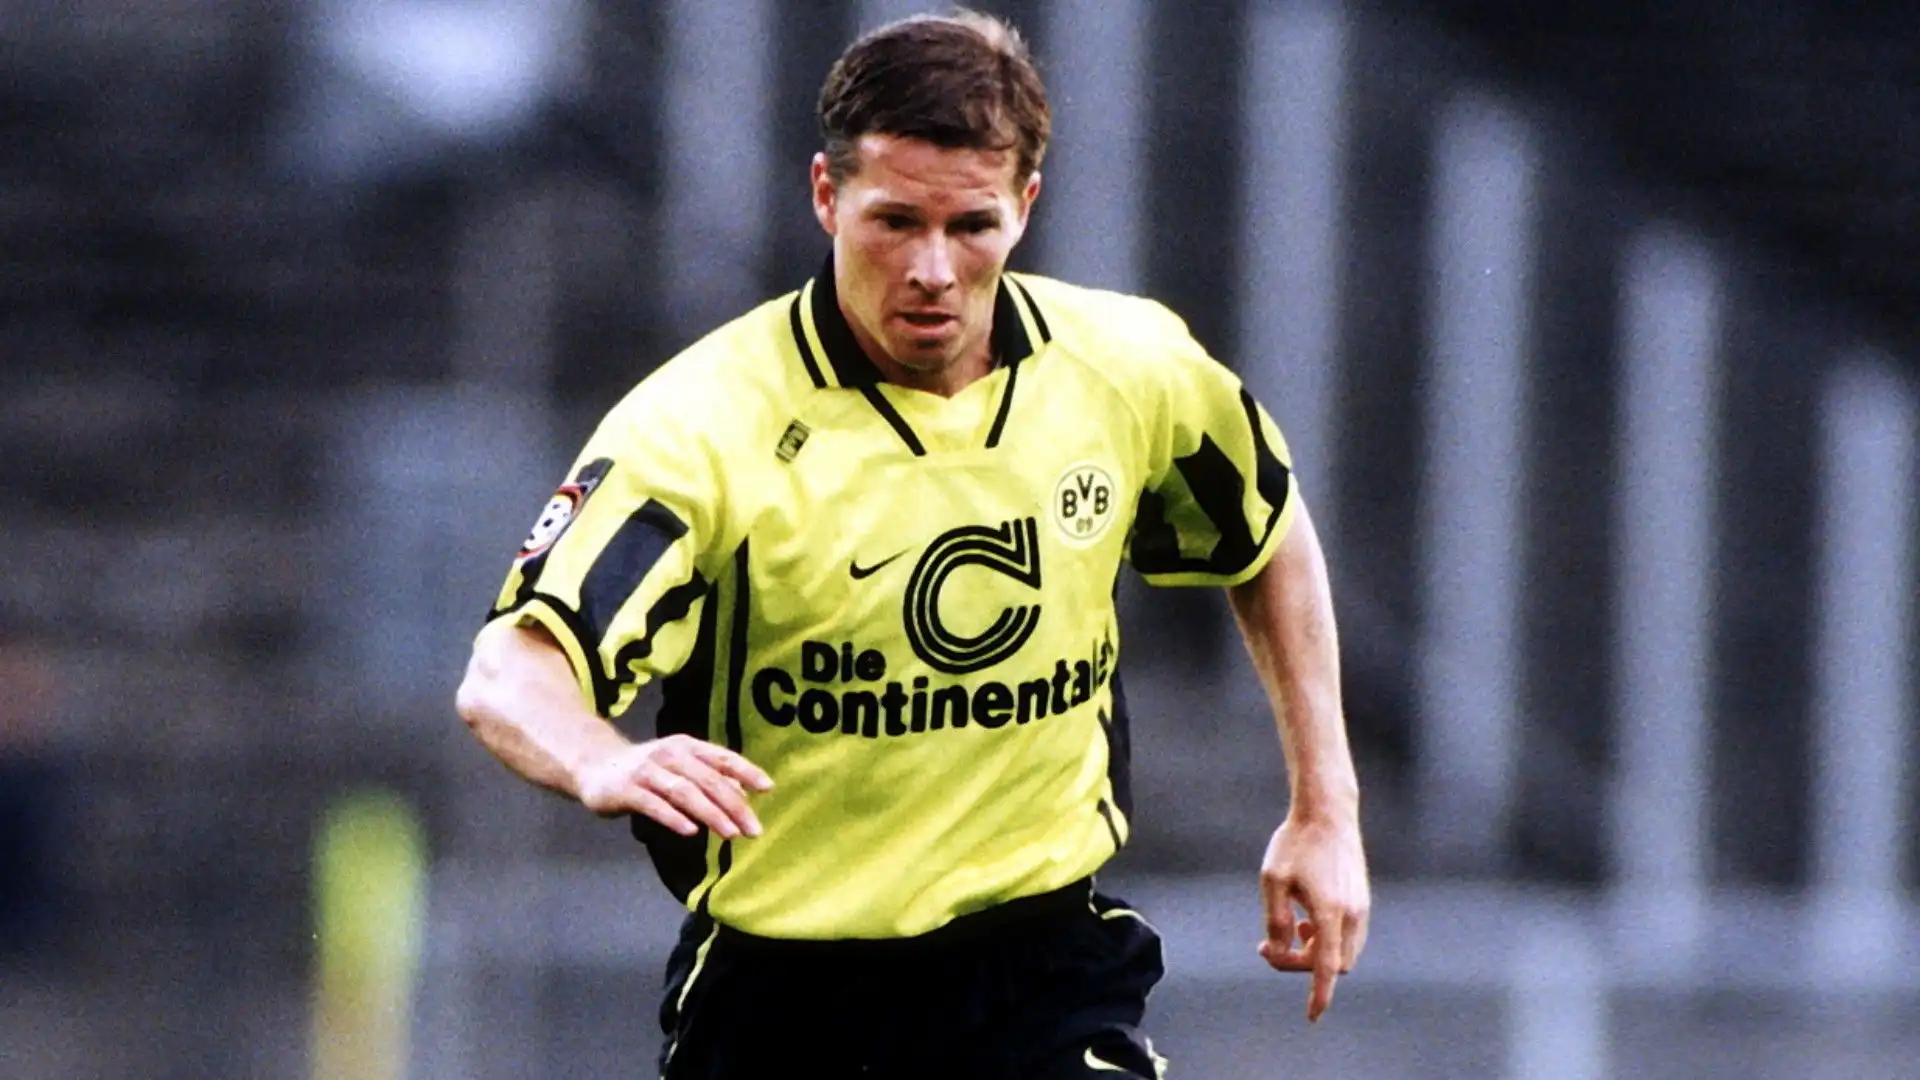 9- Difensore simbolo del Borussia Dortmund: Stefan Reuter